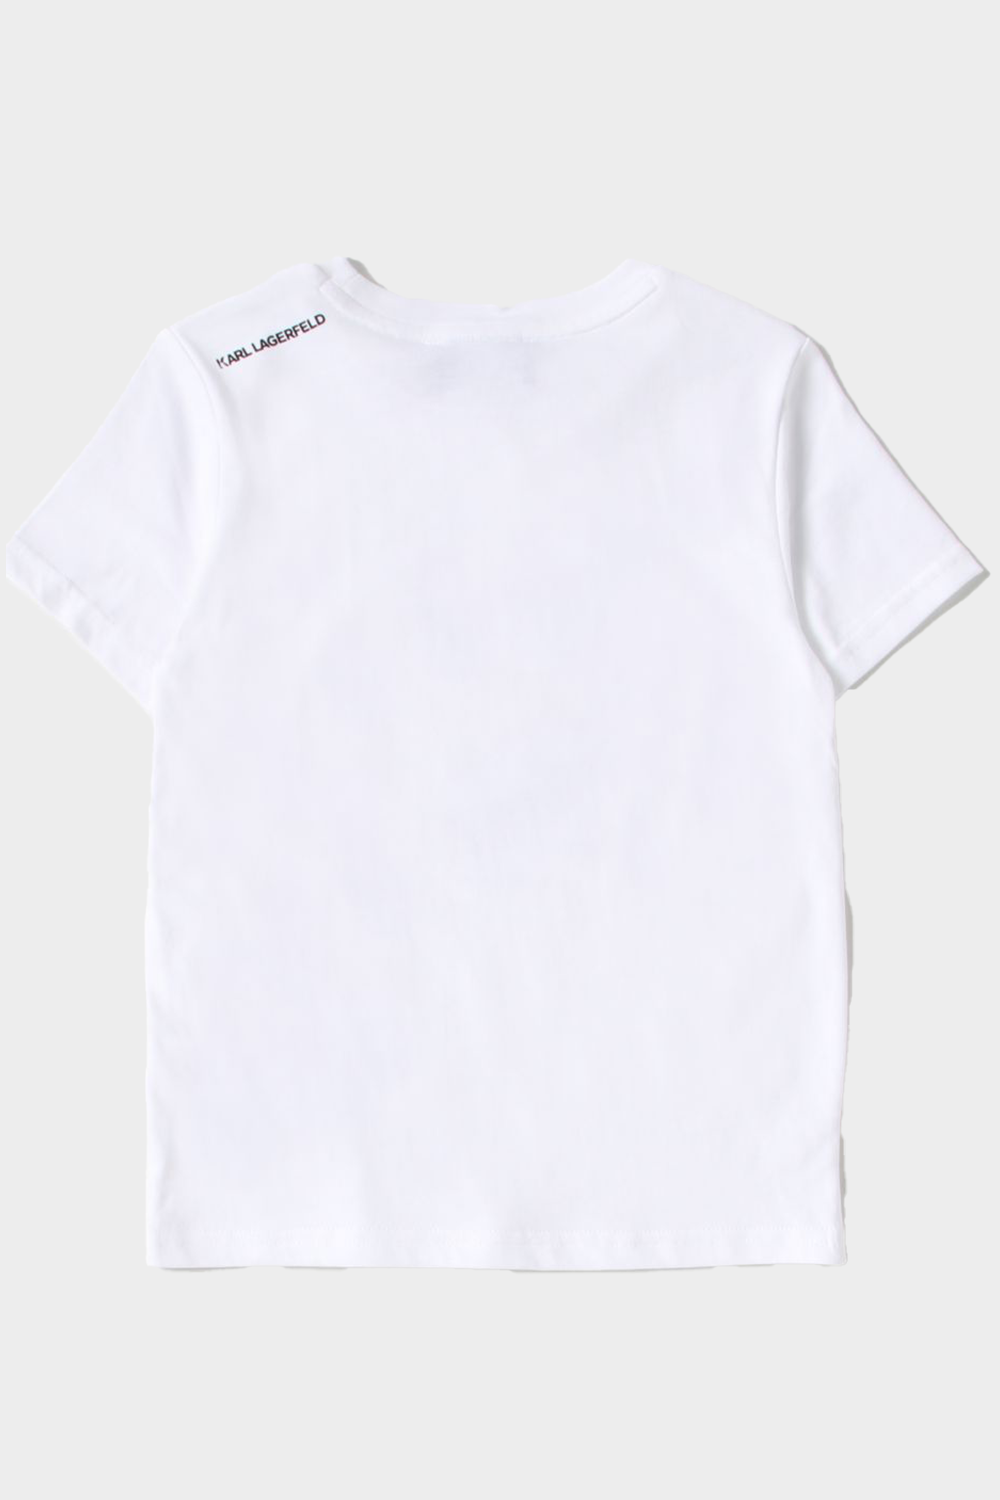 חולצת טי שירט לילדים בצבע לבן